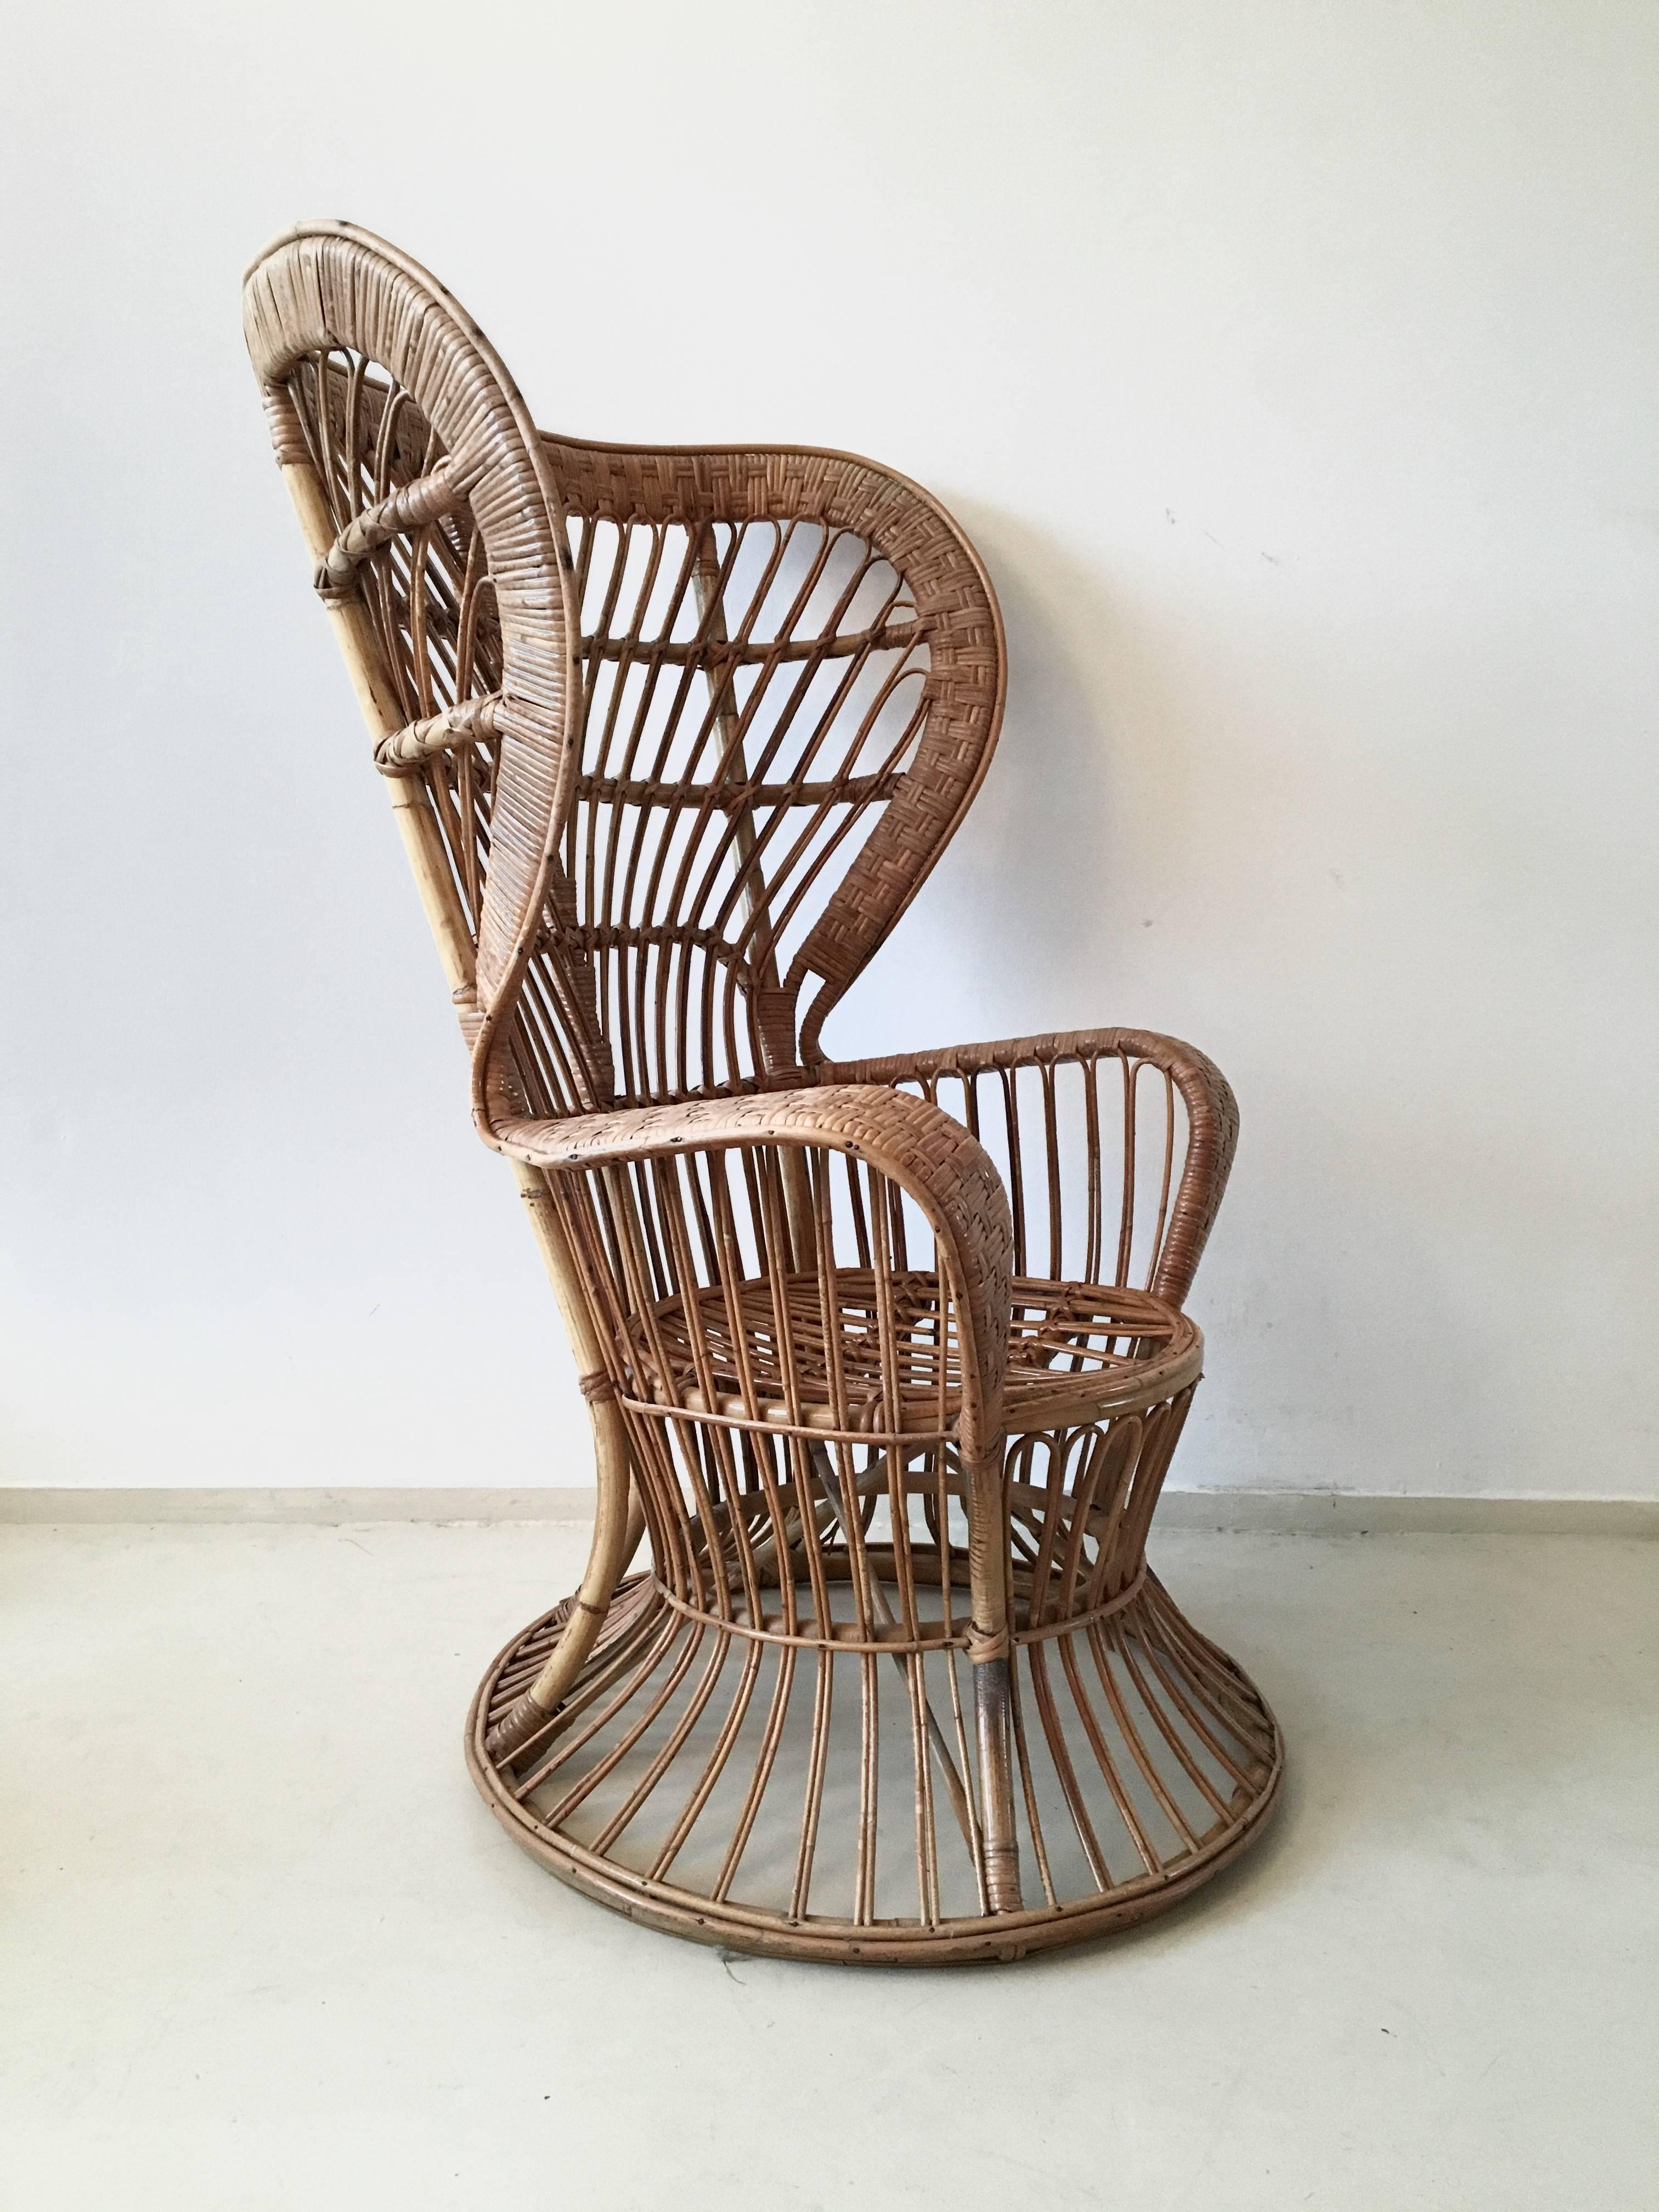 Ce magnifique fauteuil en rotin a été conçu dans le style de Gio Ponti et Lio Carminati. Il a été fabriqué en Italie et conçu comme le siège Conte Biancamano du croiseur. La chaise reste en bon état et quelques pailles de rotin ont été restaurées